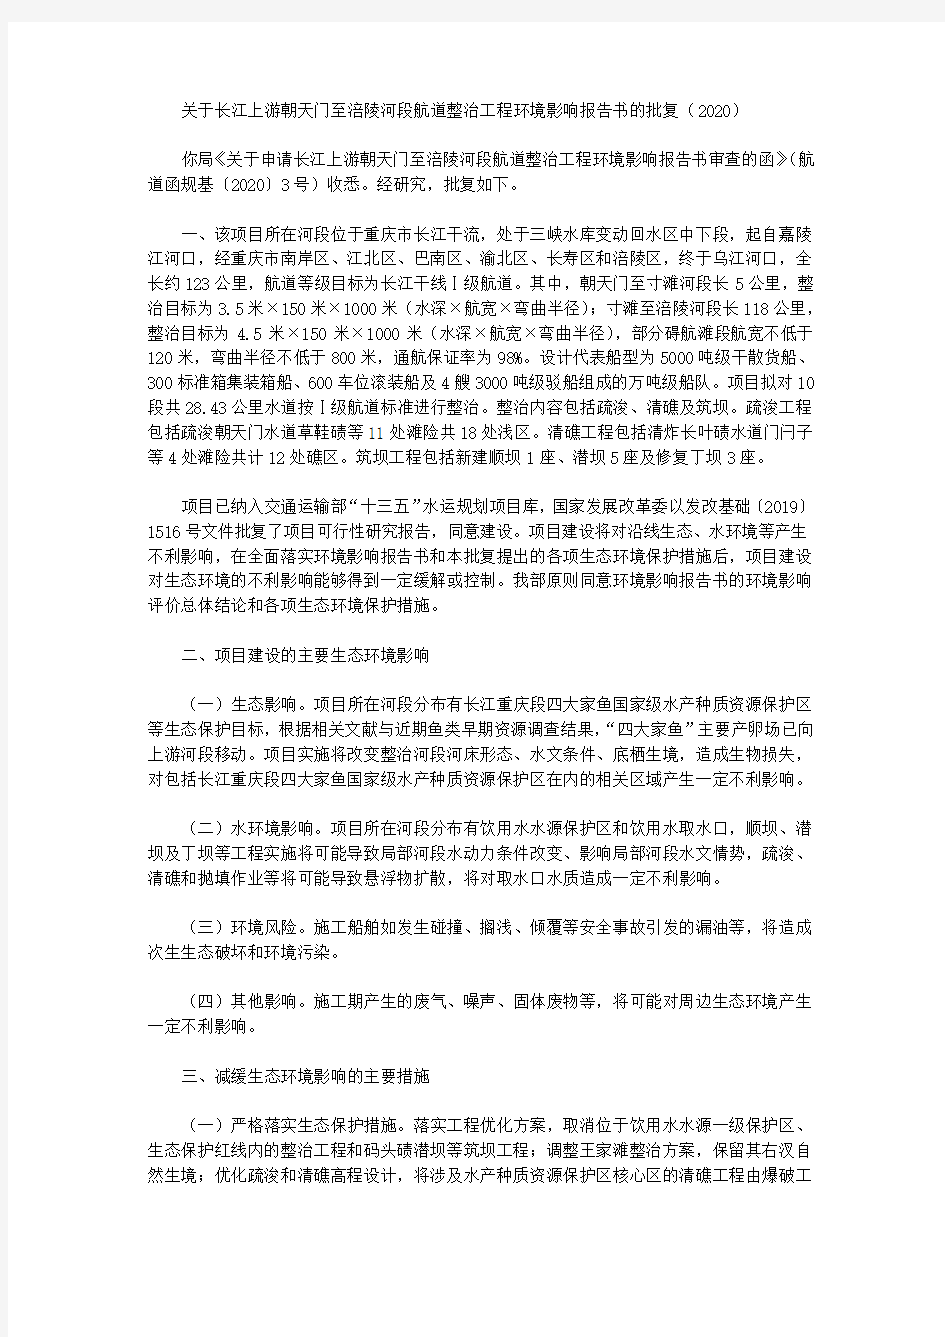 关于长江上游朝天门至涪陵河段航道整治工程环境影响报告书的批复(2020)